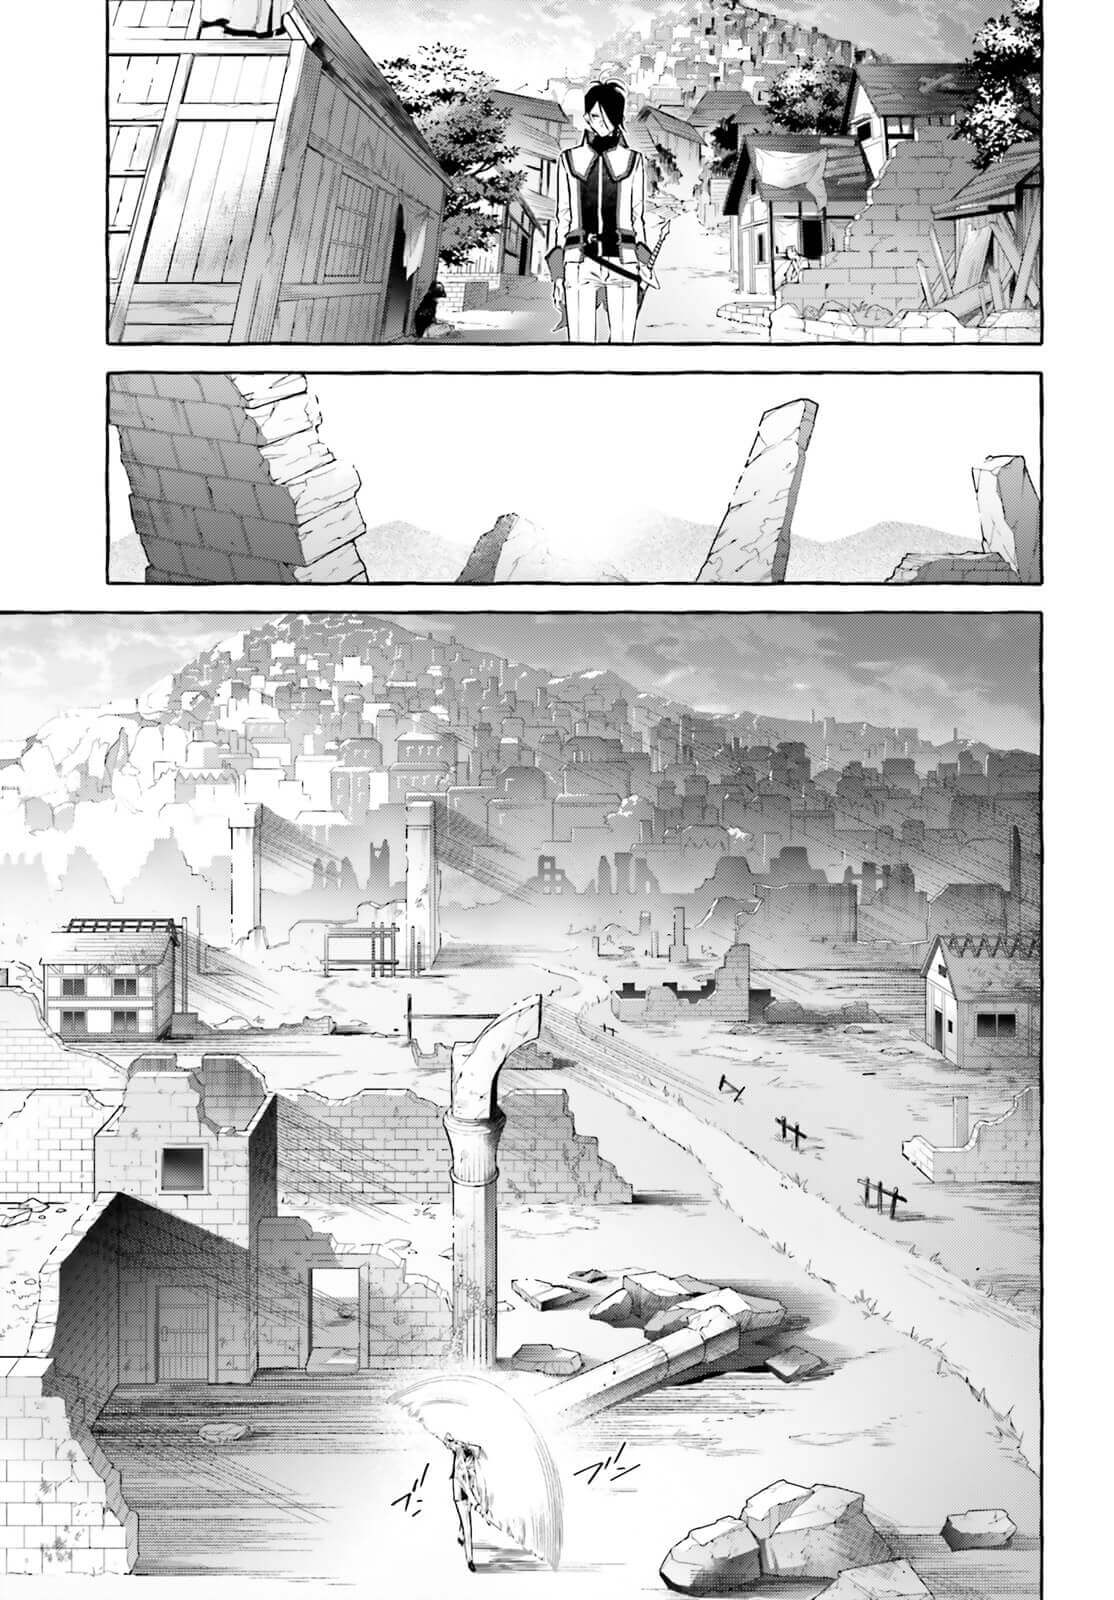 Re: Zero Kara Hajimeru Isekai Seikatsu Kenki Koiuta Vol. 1 Ch. 5 A New Landscape